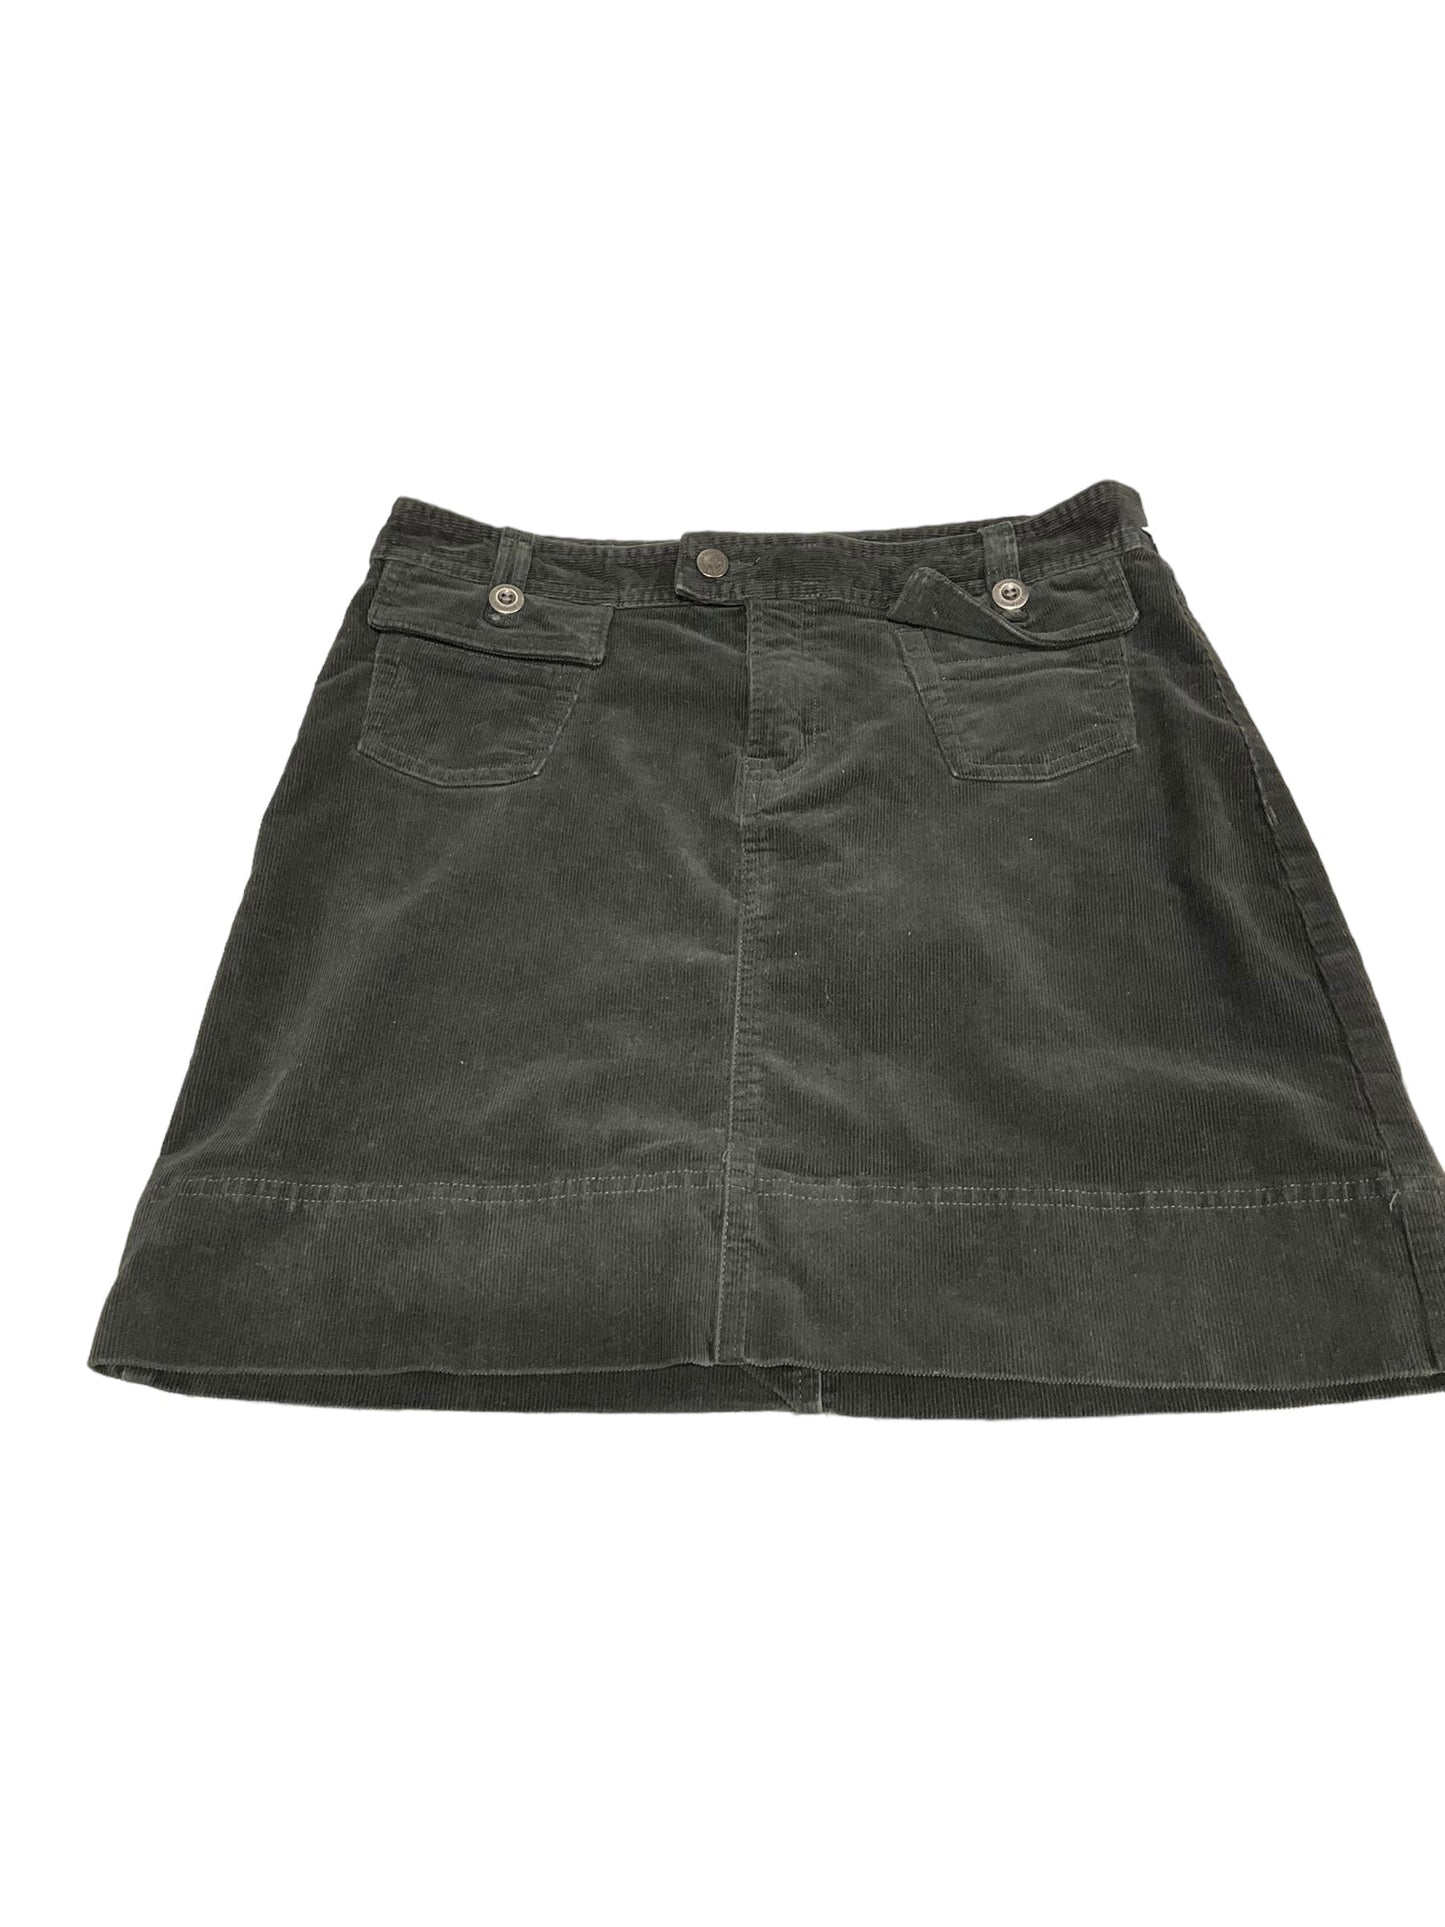 Black Skirt Mini & Short Patagonia, Size 8